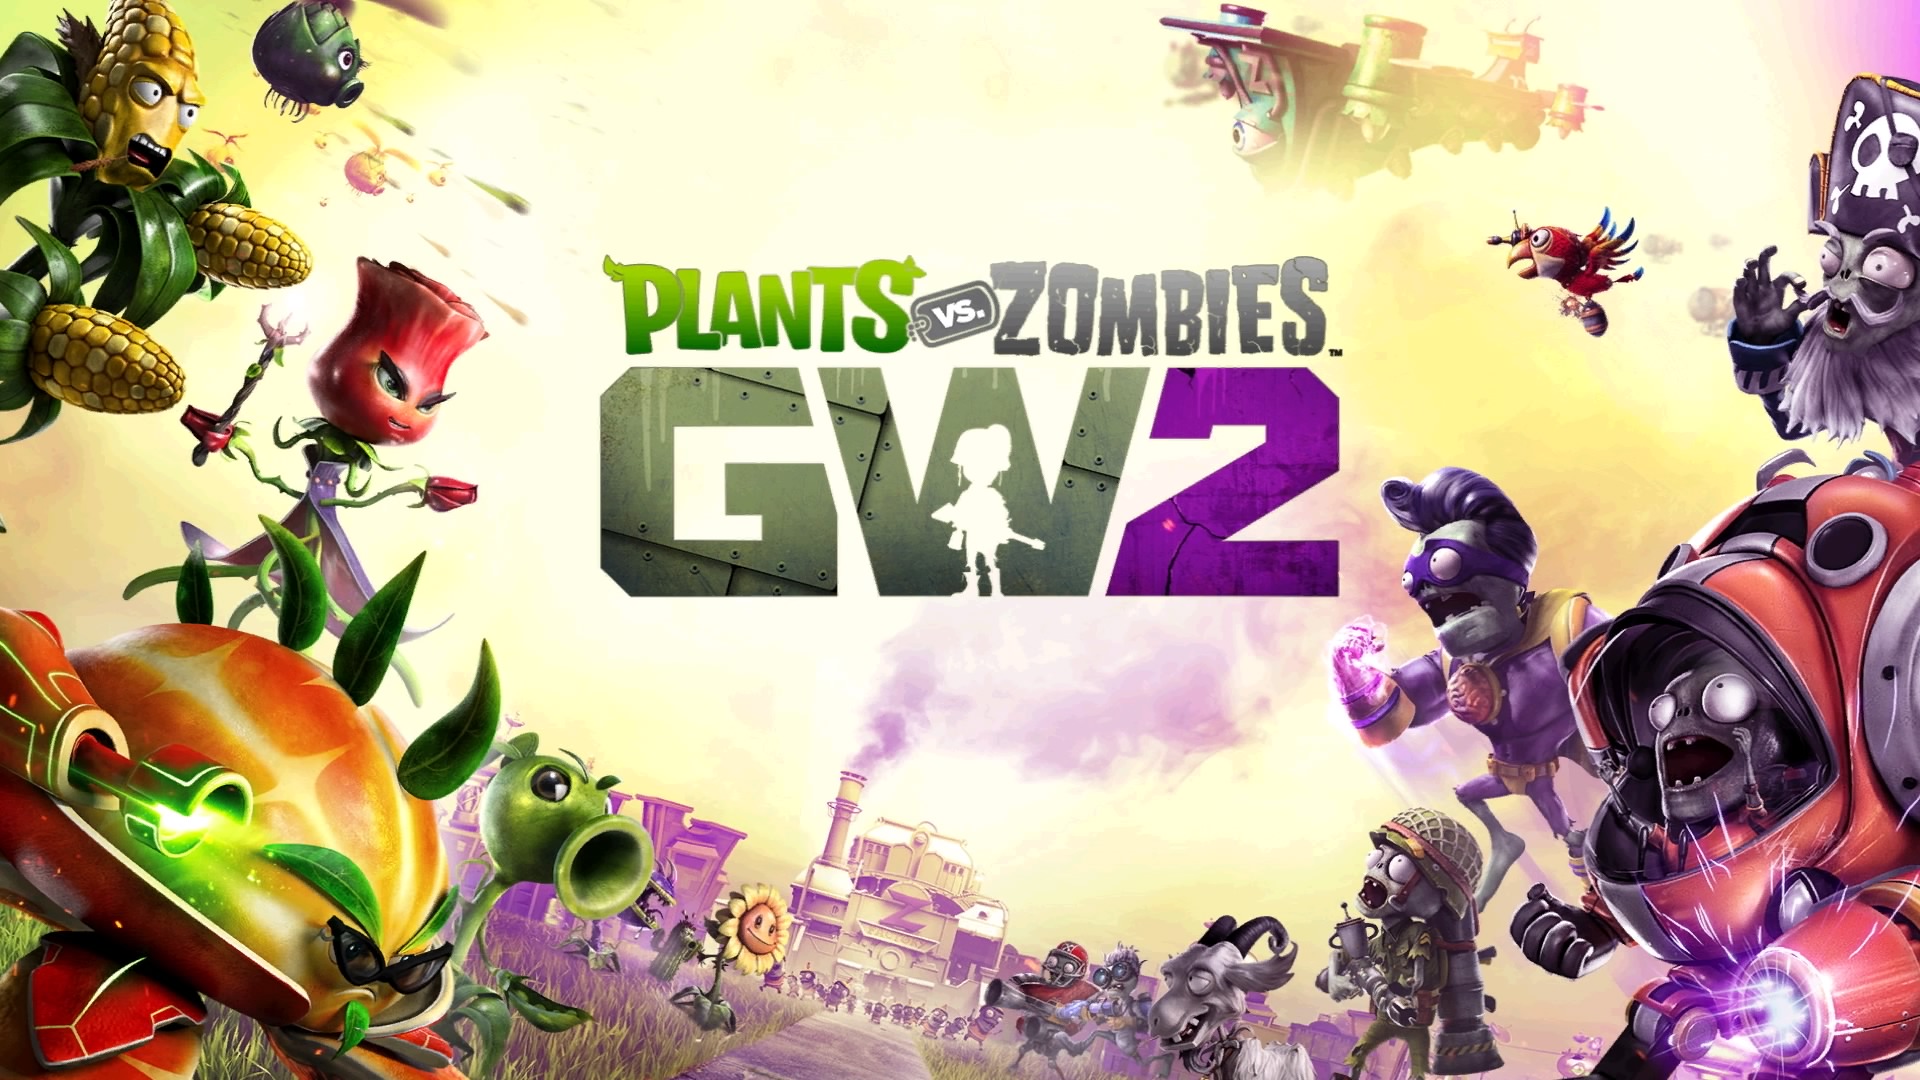 Plants vs. Zombies: Garden Warfare' now on PC